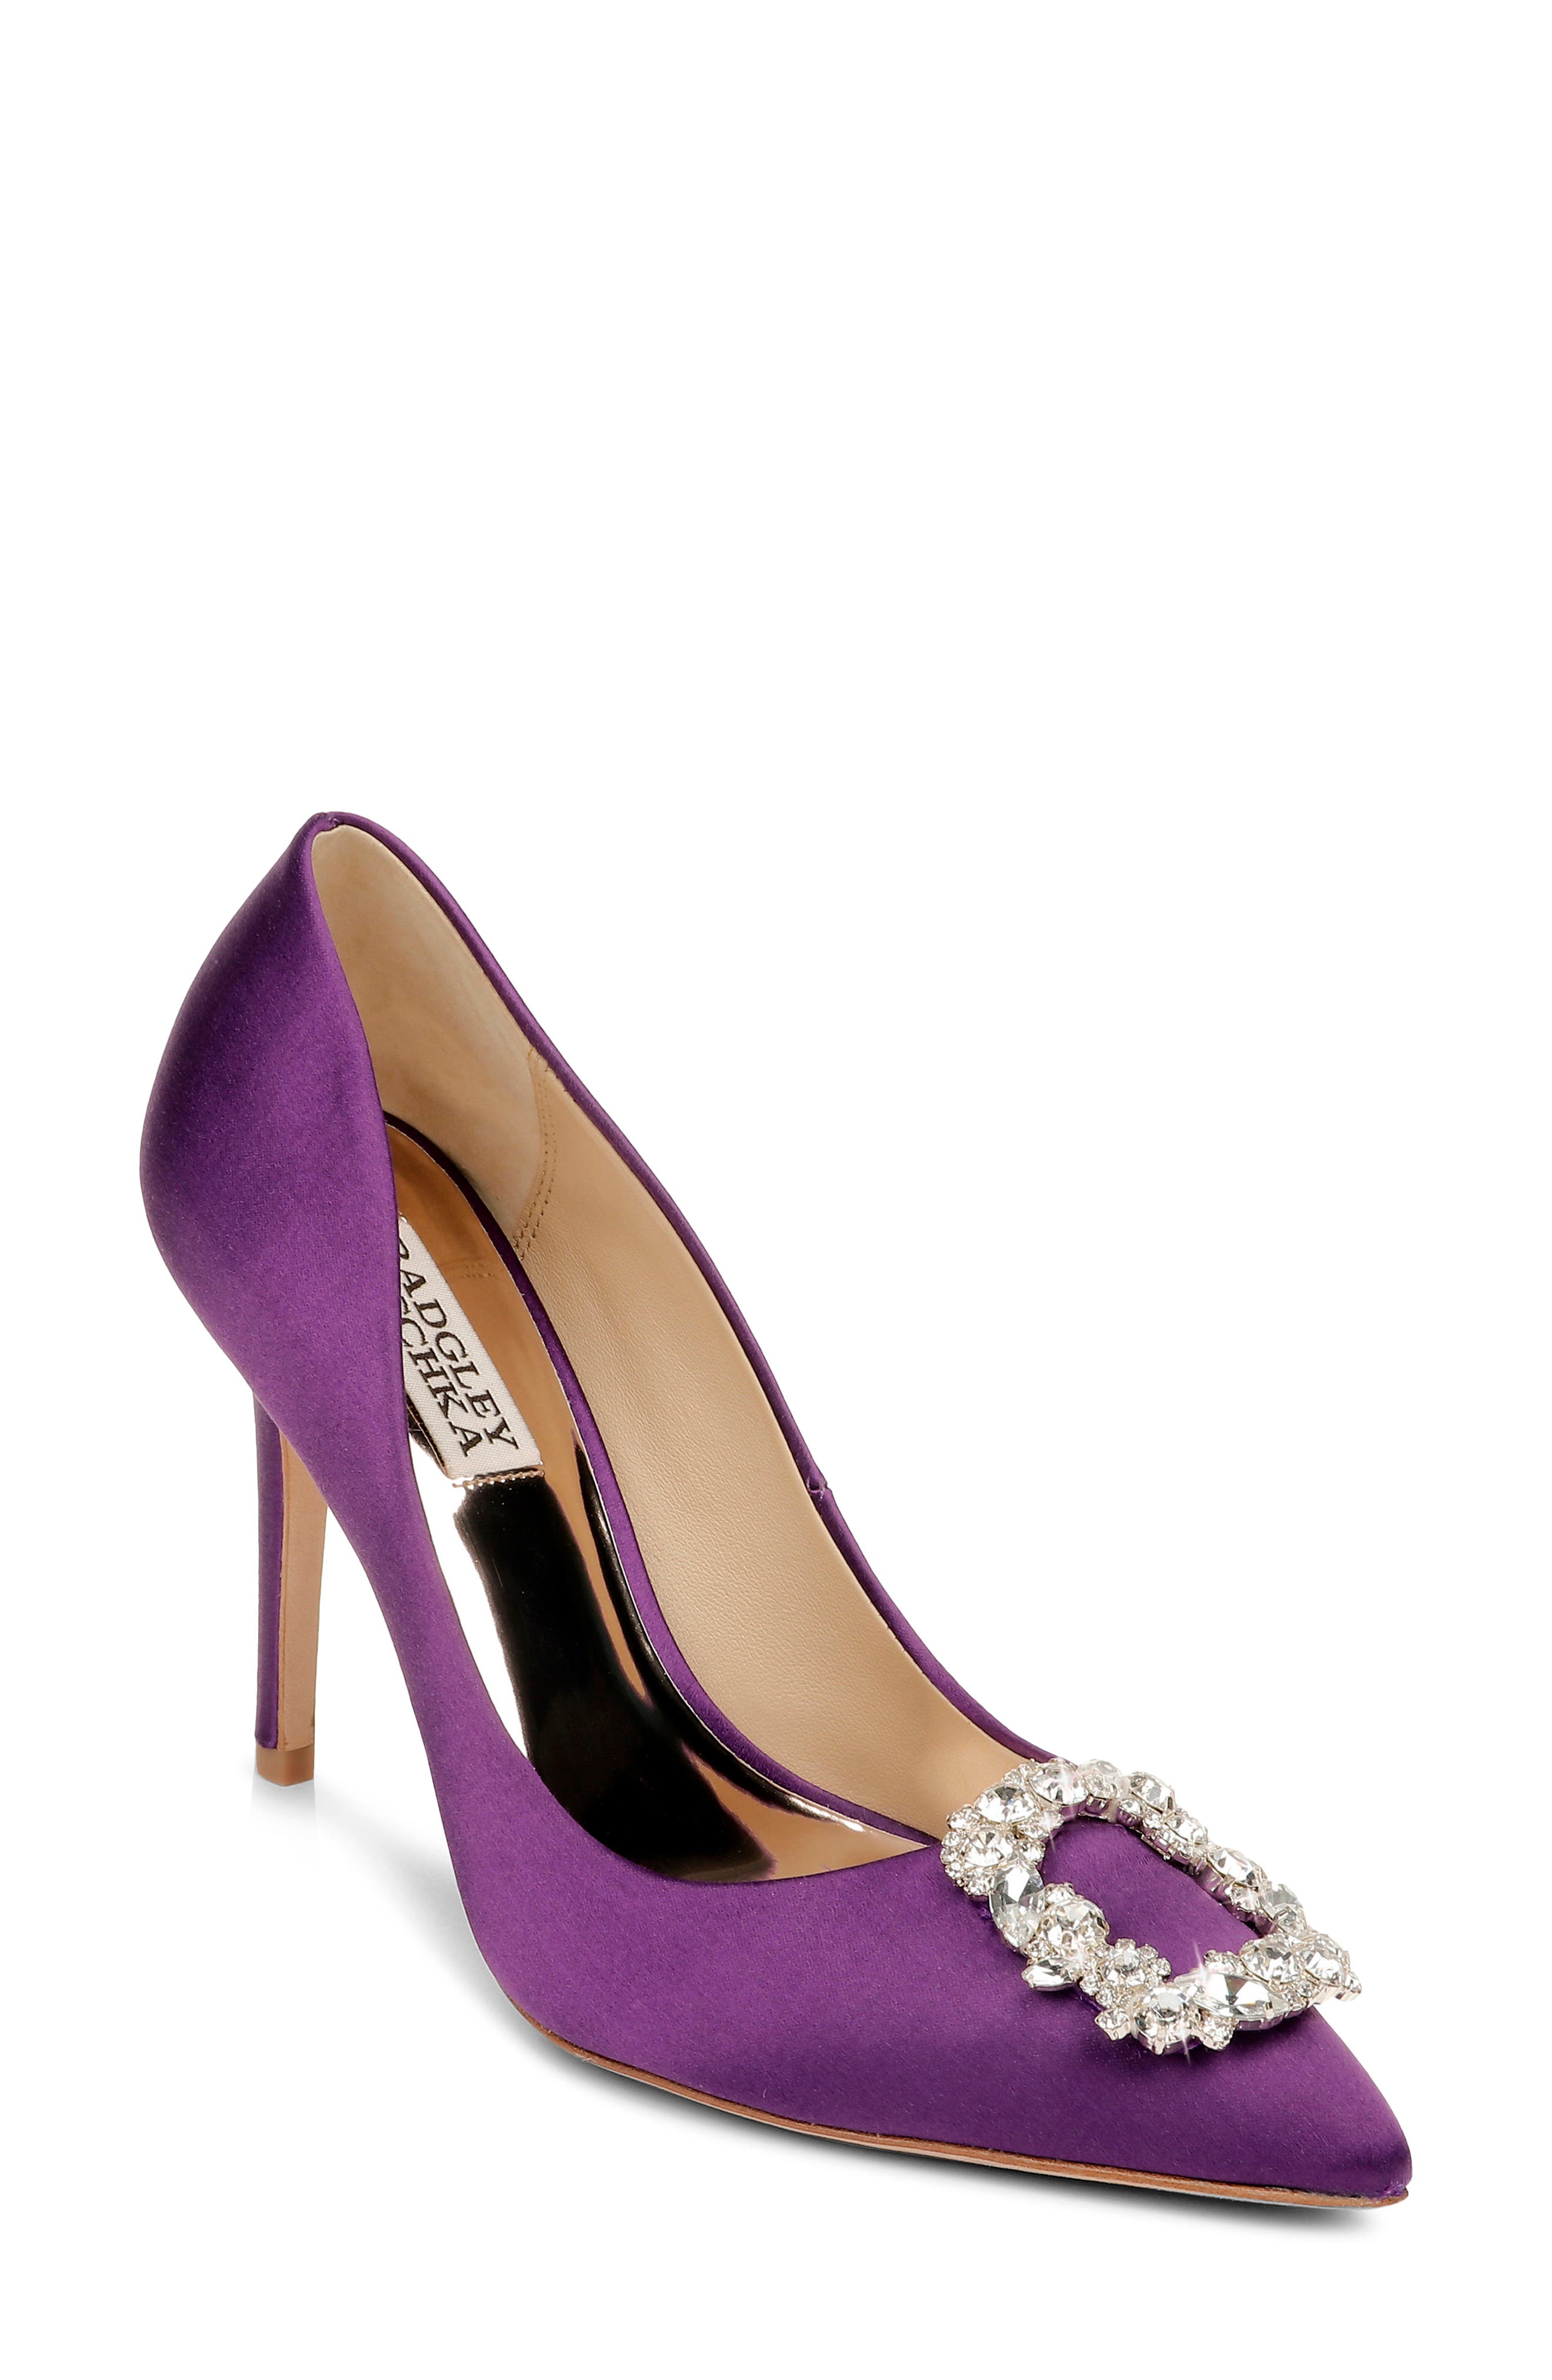 dark purple heels for wedding